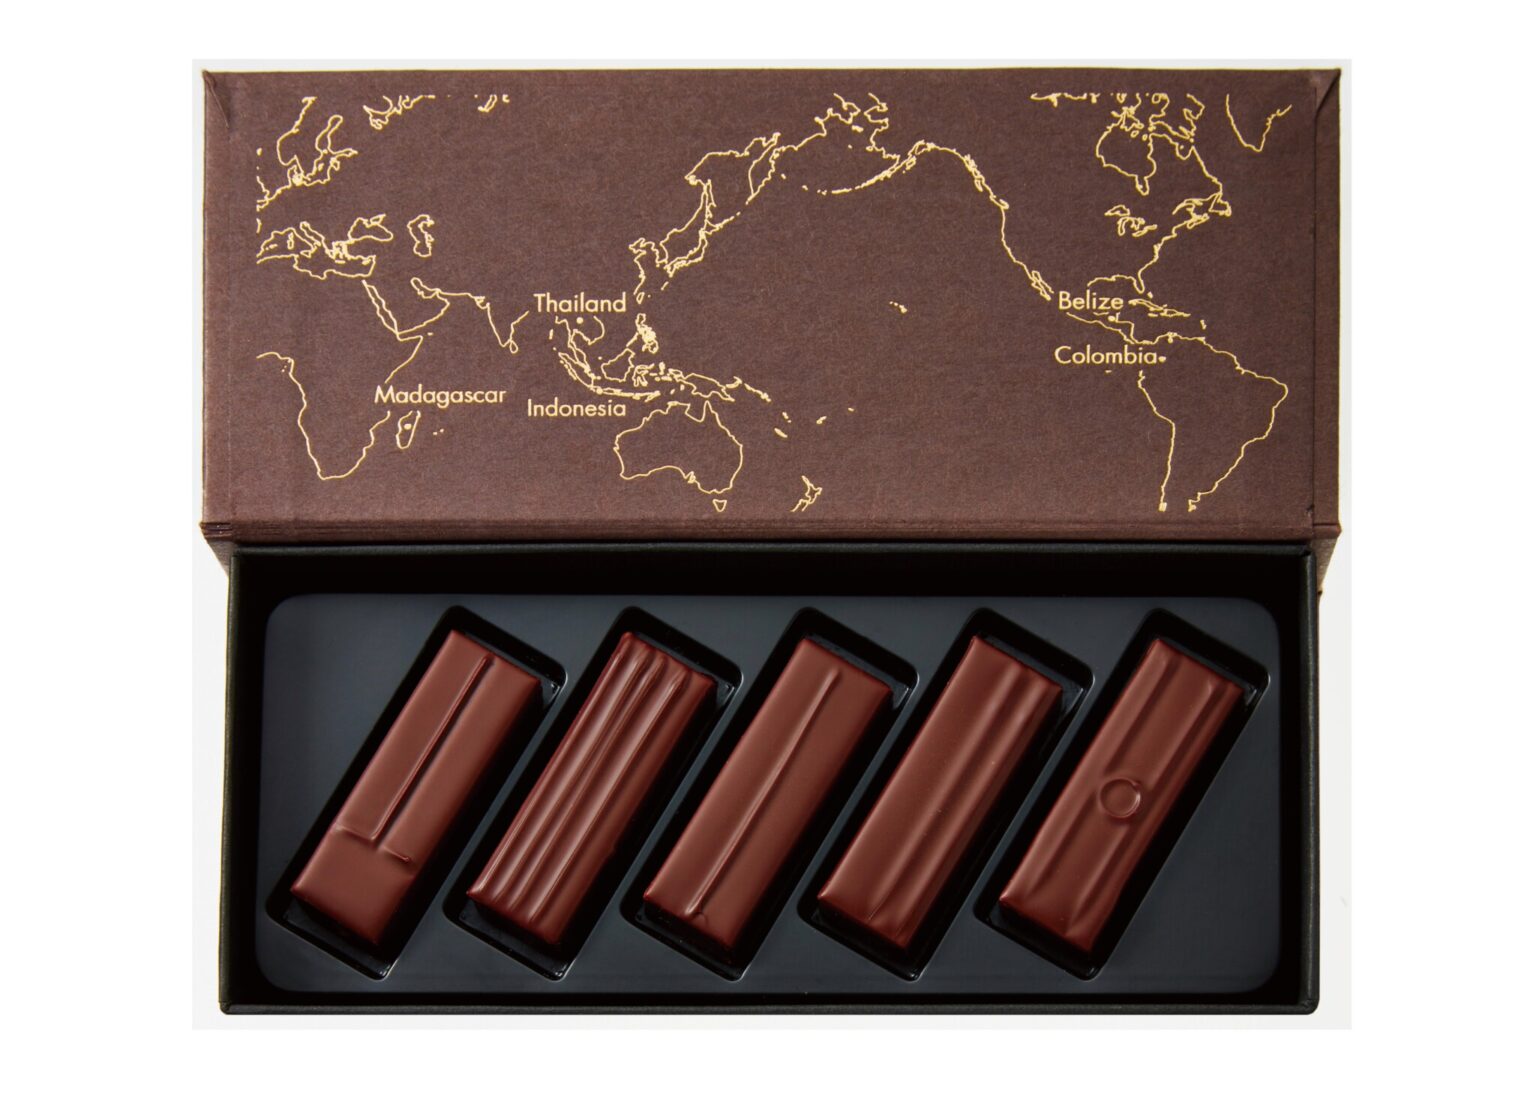 【Part1】マダガスカルやタイ、インドネシアなど、5カ国のカカオを使ったビーントゥボンボンショコラが1粒ずつセットに。〈プレスキル 
 ショコラトリー カカオエディション〉の「テロワールショコラ」5個入 2,484円（Web販売あり）